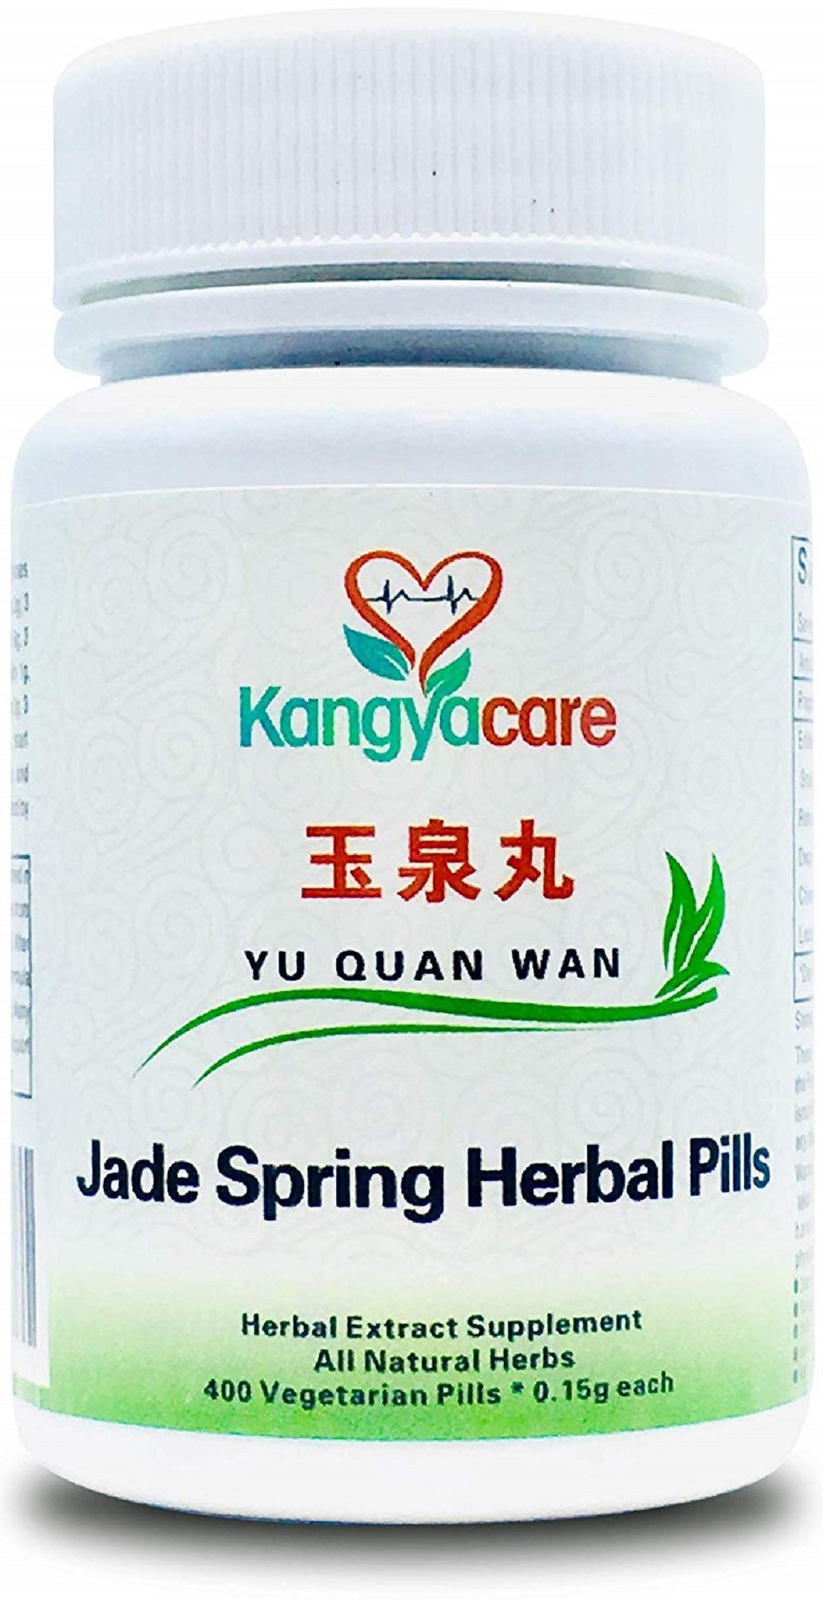 Kangyacare Yu Quan Wan Jade Spring Herbal Pills Blood Sugar Balance 400Ct/Bottle